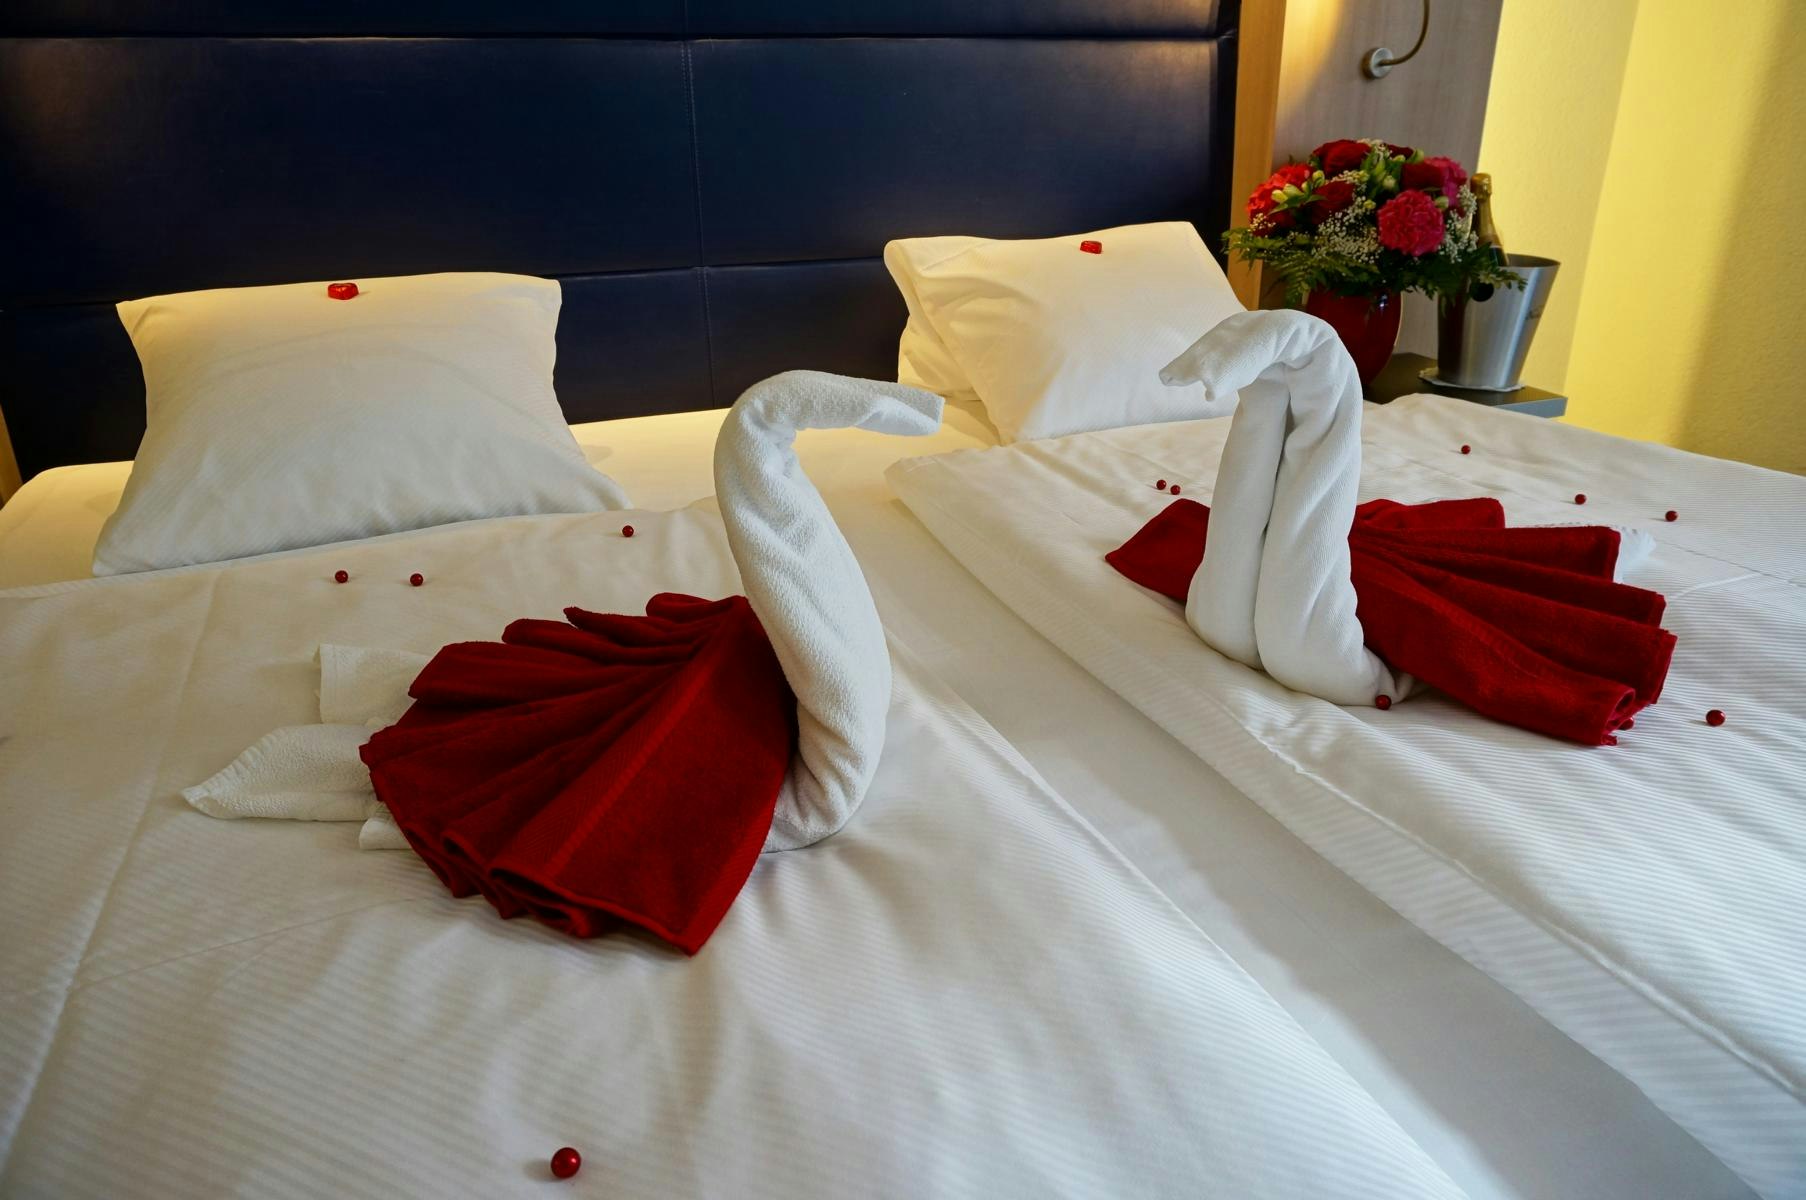 Pure romance at Hotel Alexander in Zurich